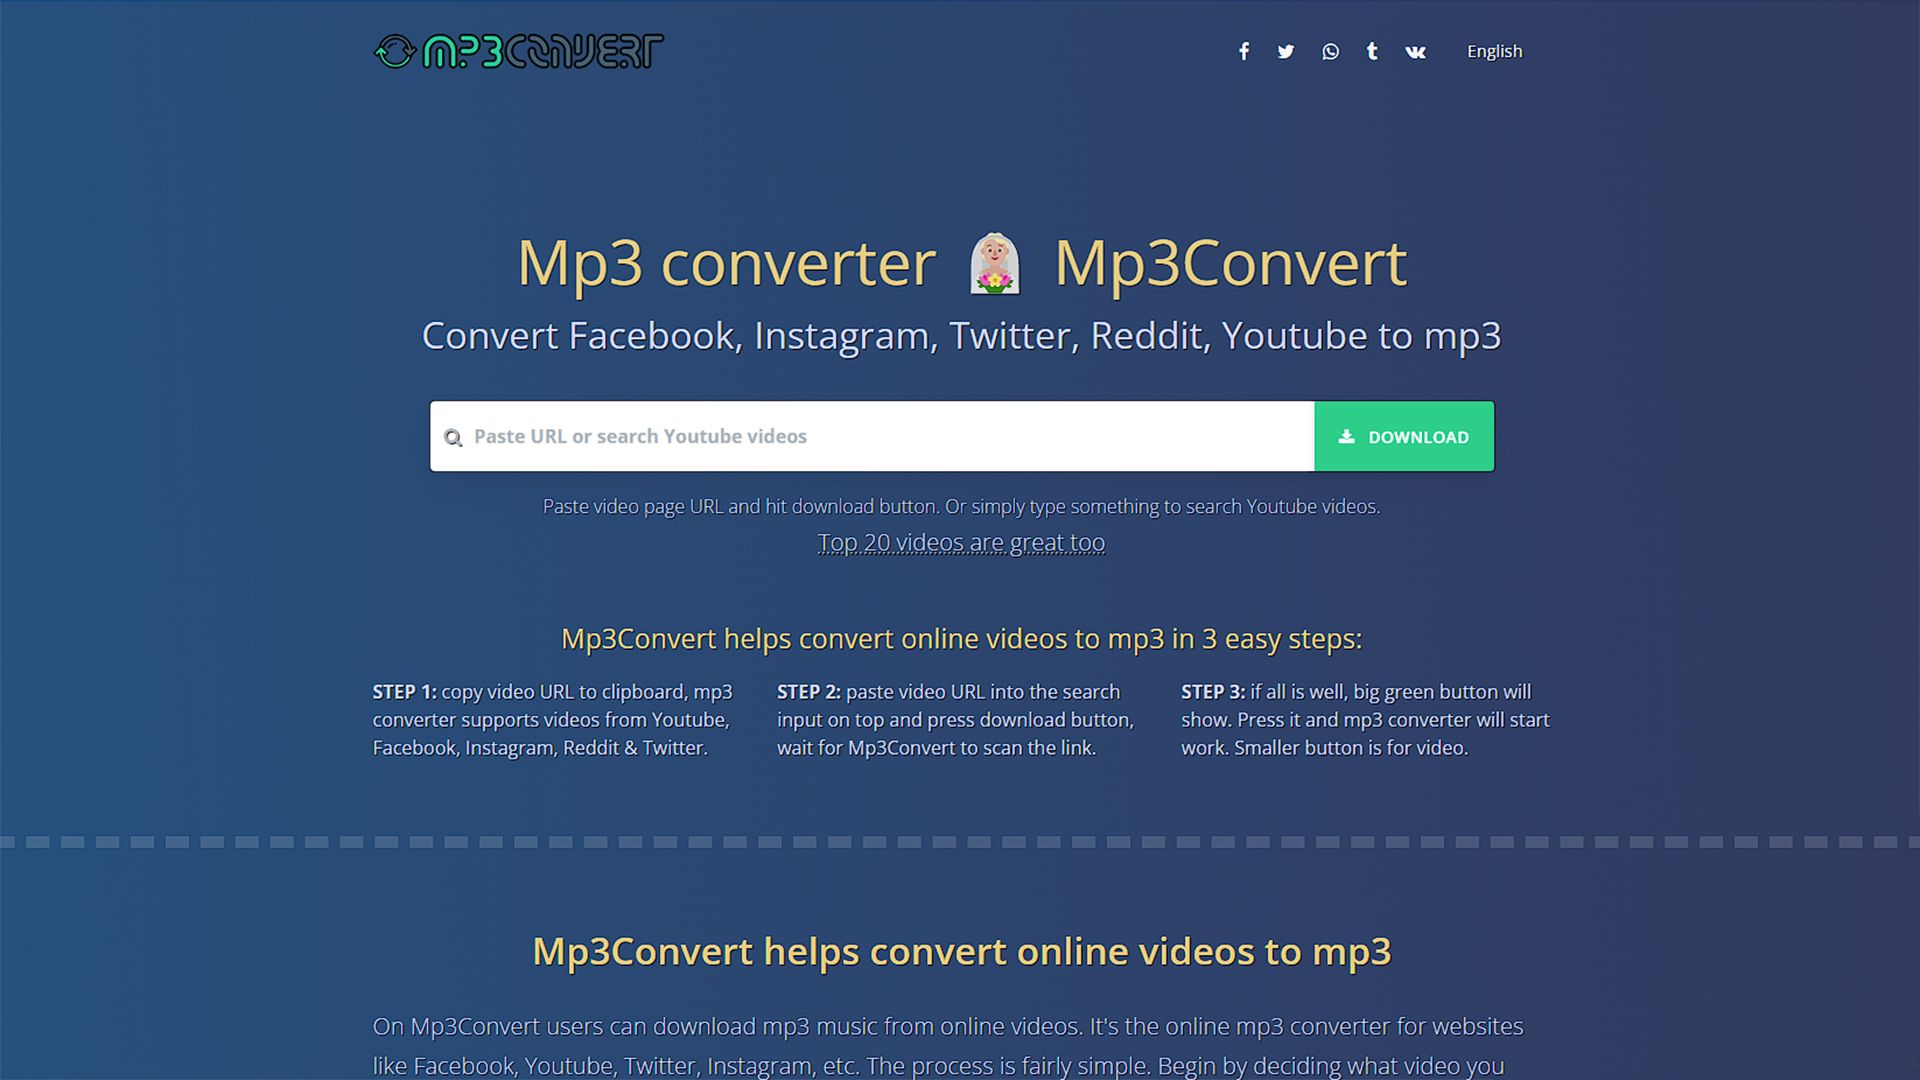 سایت mp3convert و باکس لینک در وسط آن که در کنارش دکمه دانلود دیده می شود